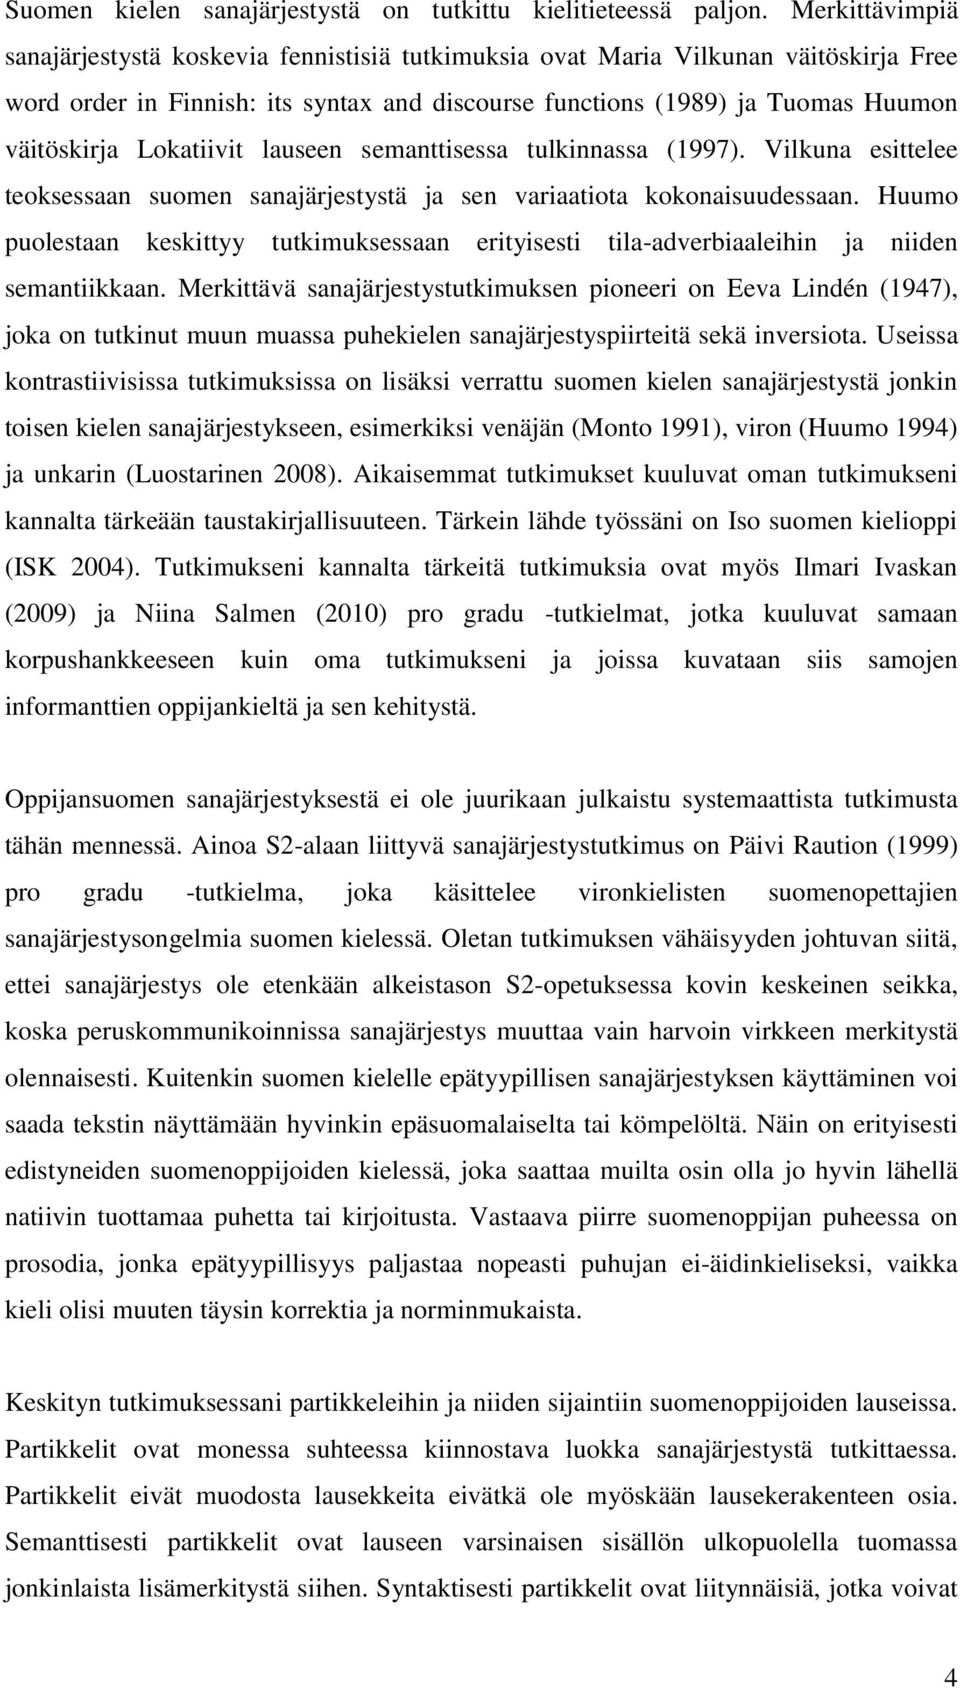 Lokatiivit lauseen semanttisessa tulkinnassa (1997). Vilkuna esittelee teoksessaan suomen sanajärjestystä ja sen variaatiota kokonaisuudessaan.